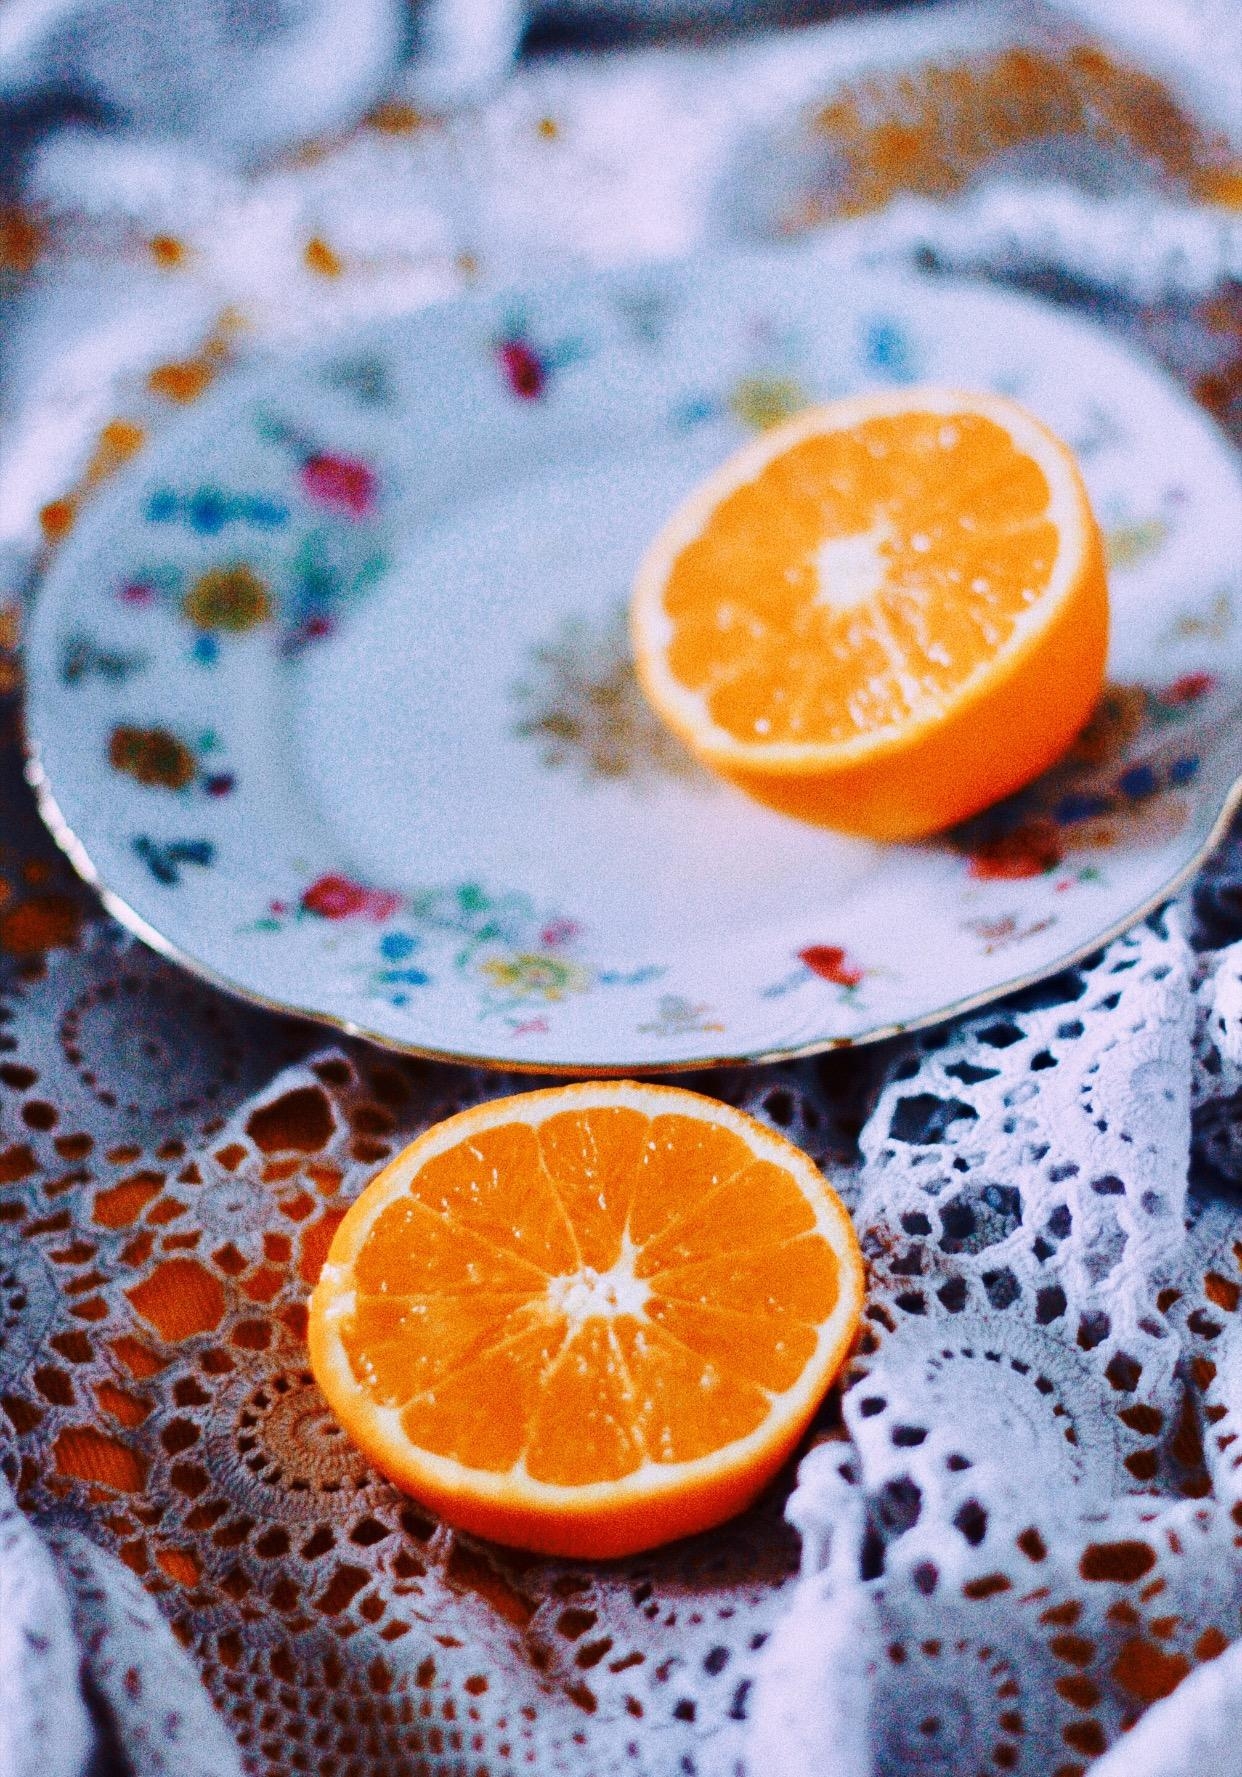 🍊
#obst#orangen#farbe#couchliebt#couchstyle#vintage#teller